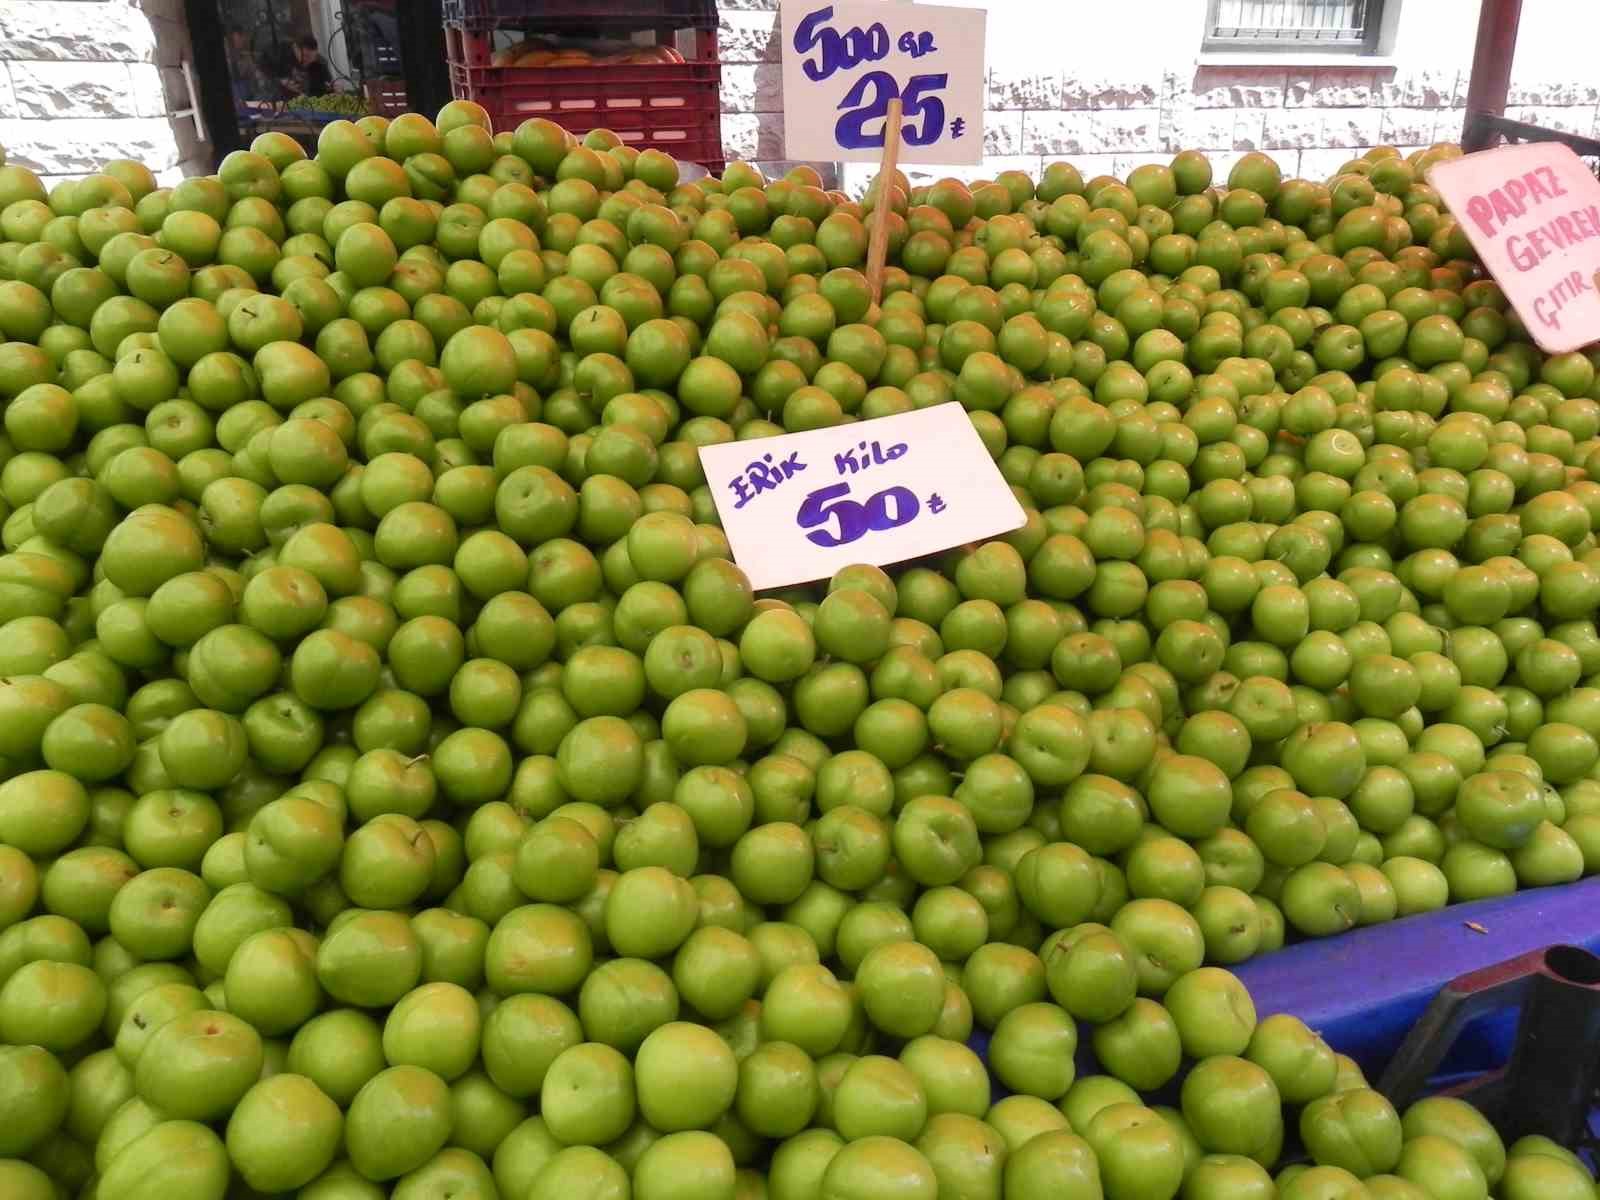 Eskişehir’deki pazarlarda bazı ürünlerin fiyatları azaldı, bazılarının ise arttı